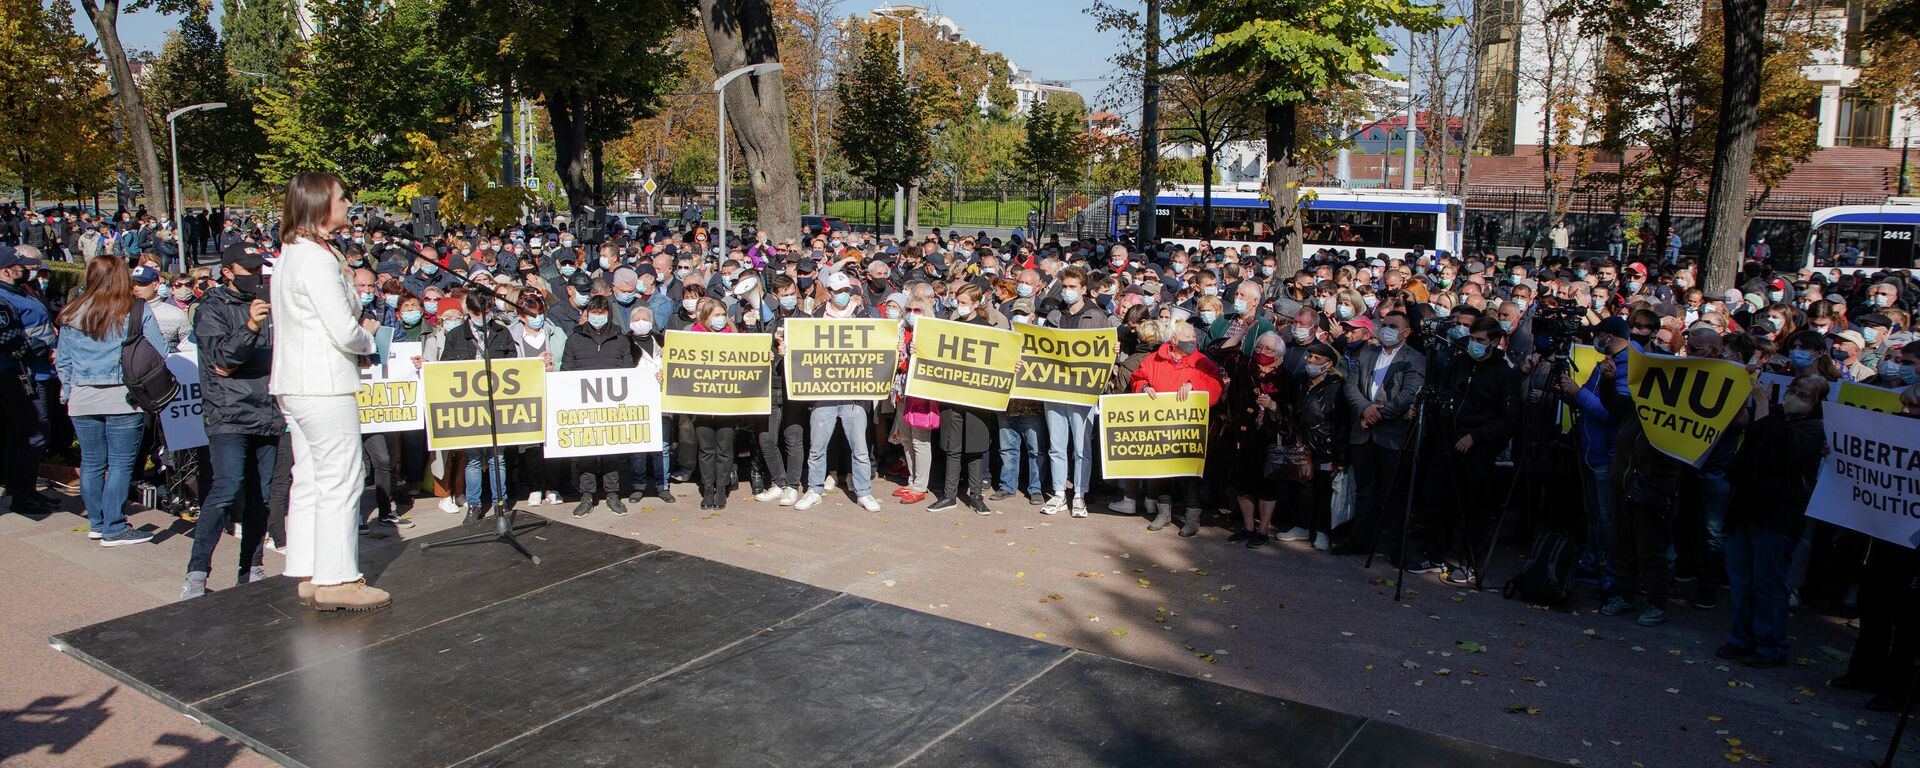 Acțiunea de protest din fața Parlamentului Moldove - Sputnik Moldova, 1920, 10.10.2021